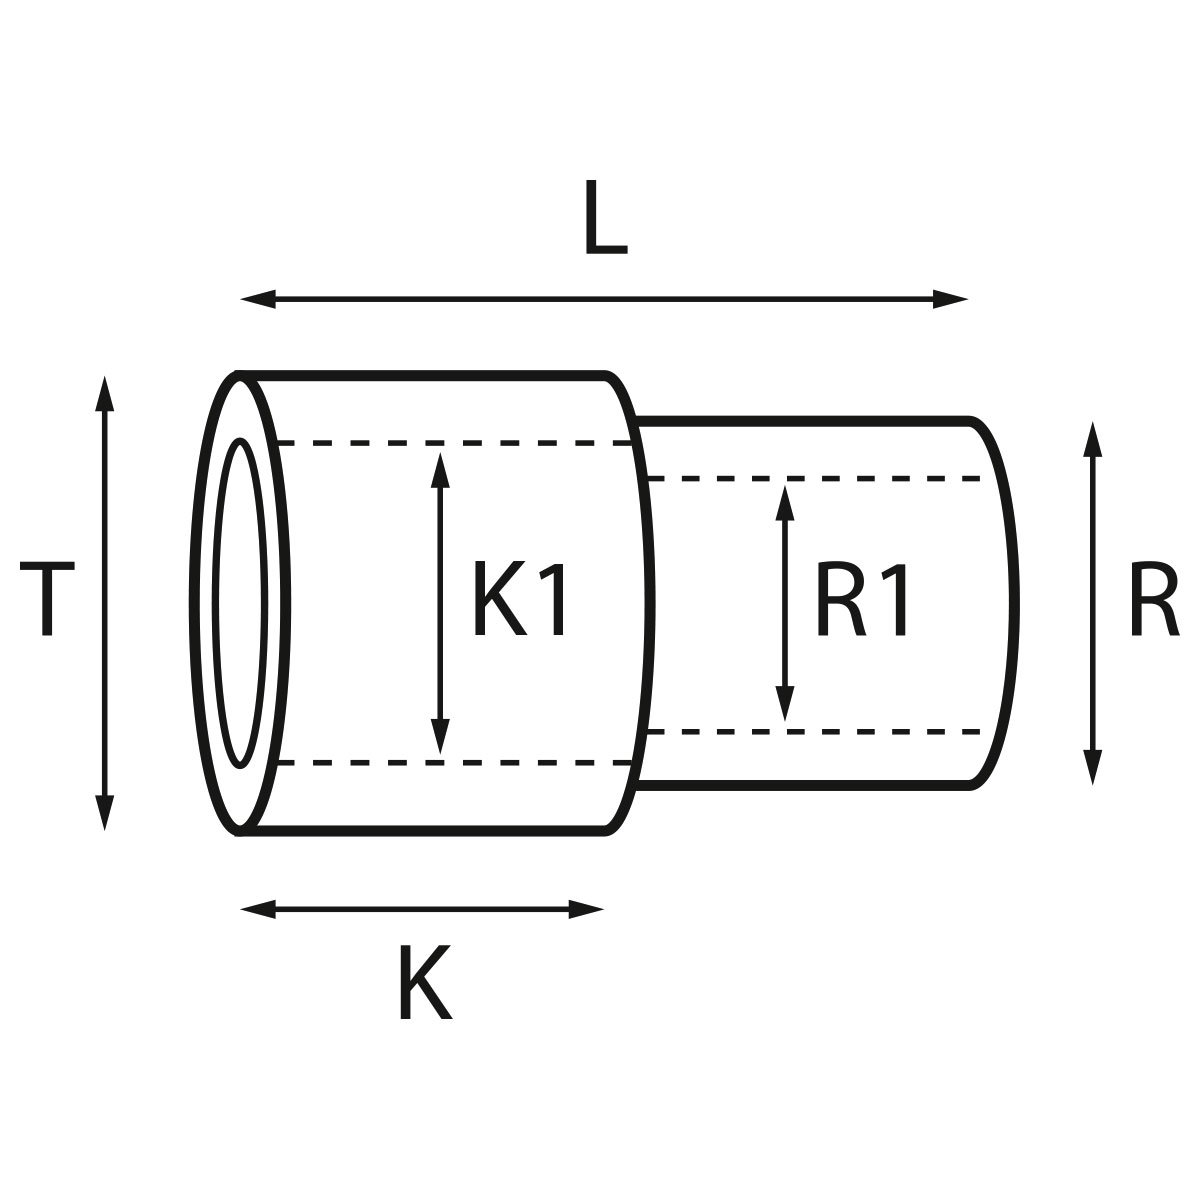 Gehäusetube Typ AS 13827, Tubus Ø 2,5 mm, Gesamtlänge 3,5 mm, für wasserdichte Kronen